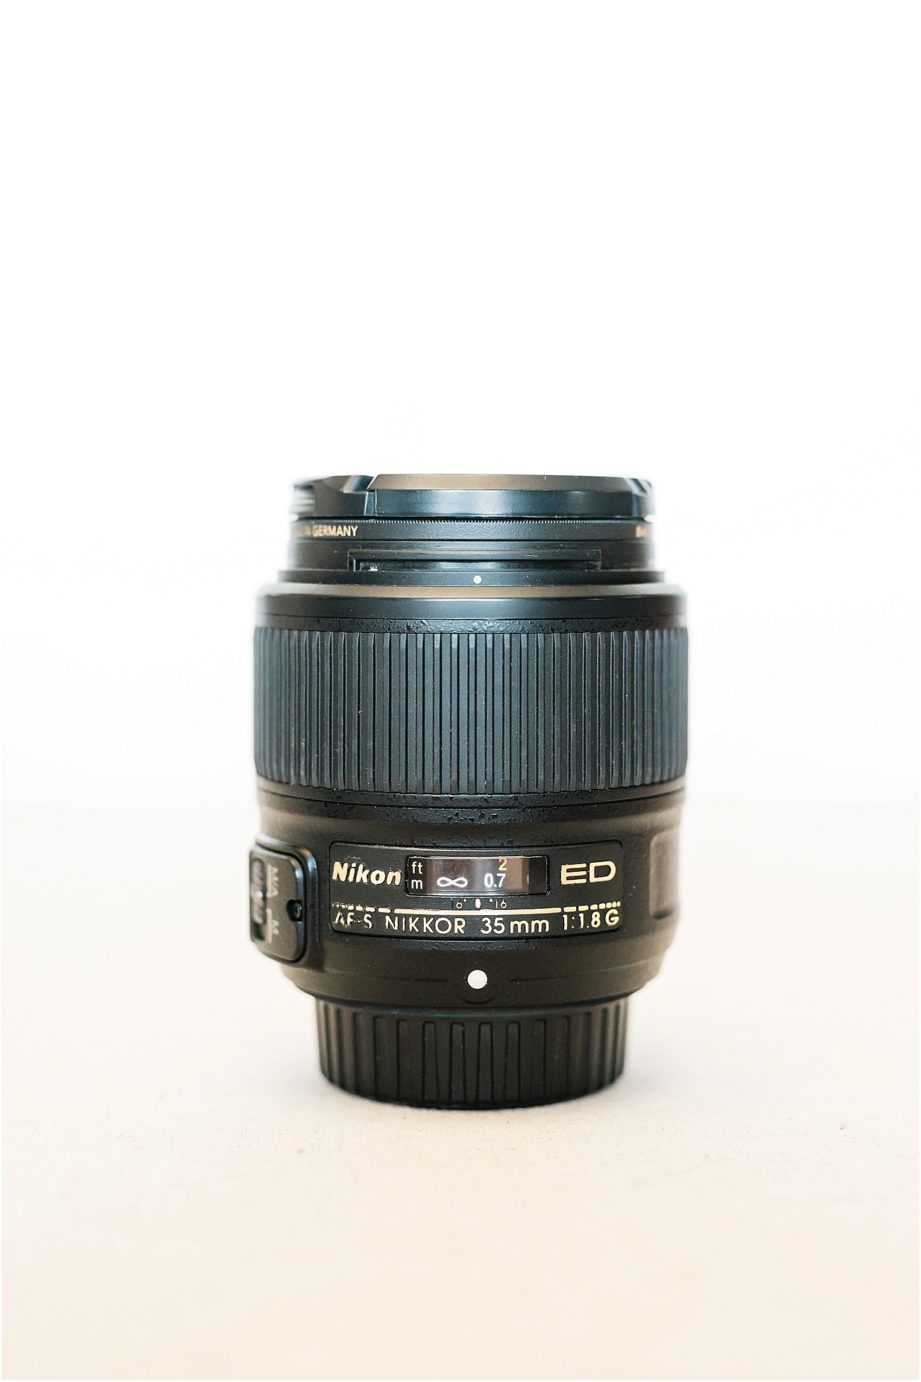 Nikon 35 mm f1.8G camera lens